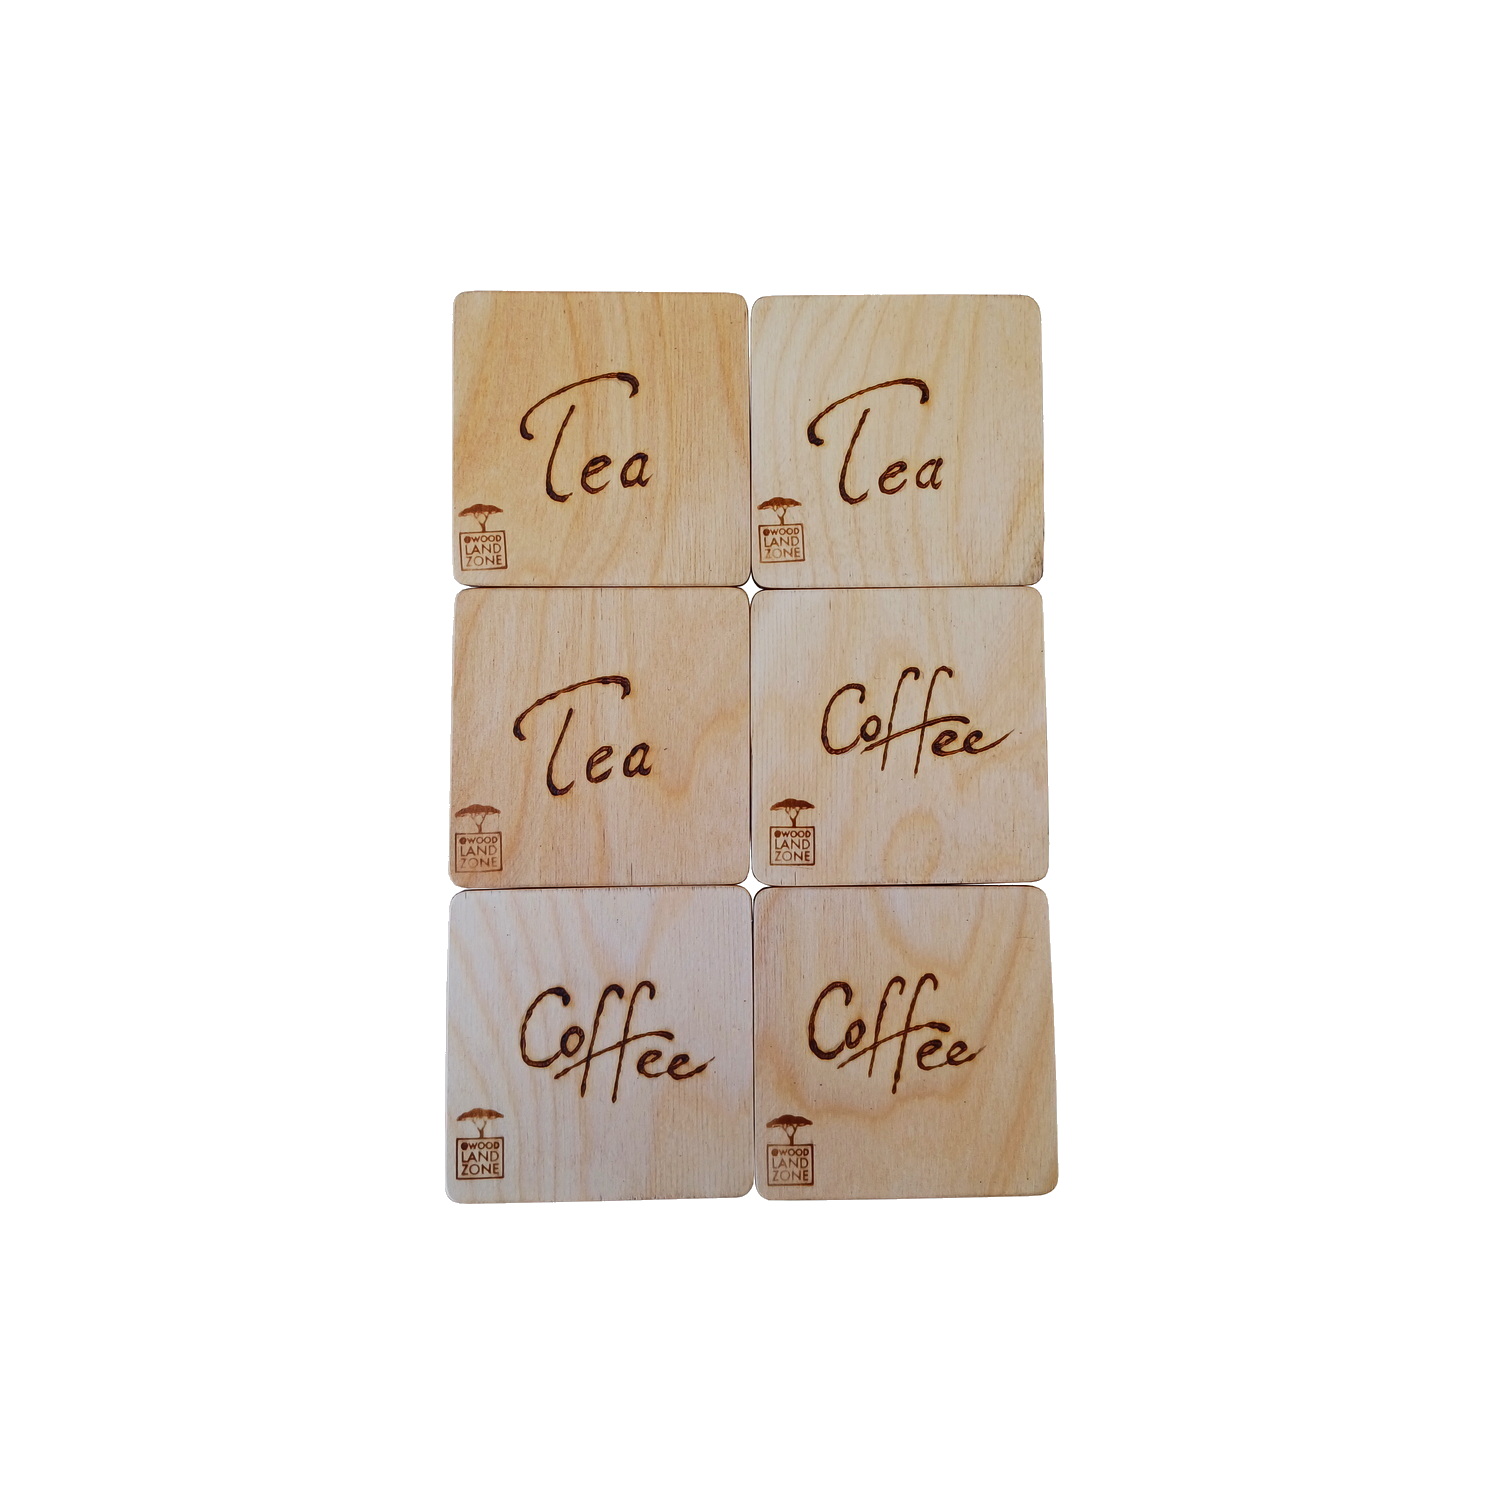 زیر لیوانی چوبی وودلندزون مدل tea-cofe بسته 6 عددی